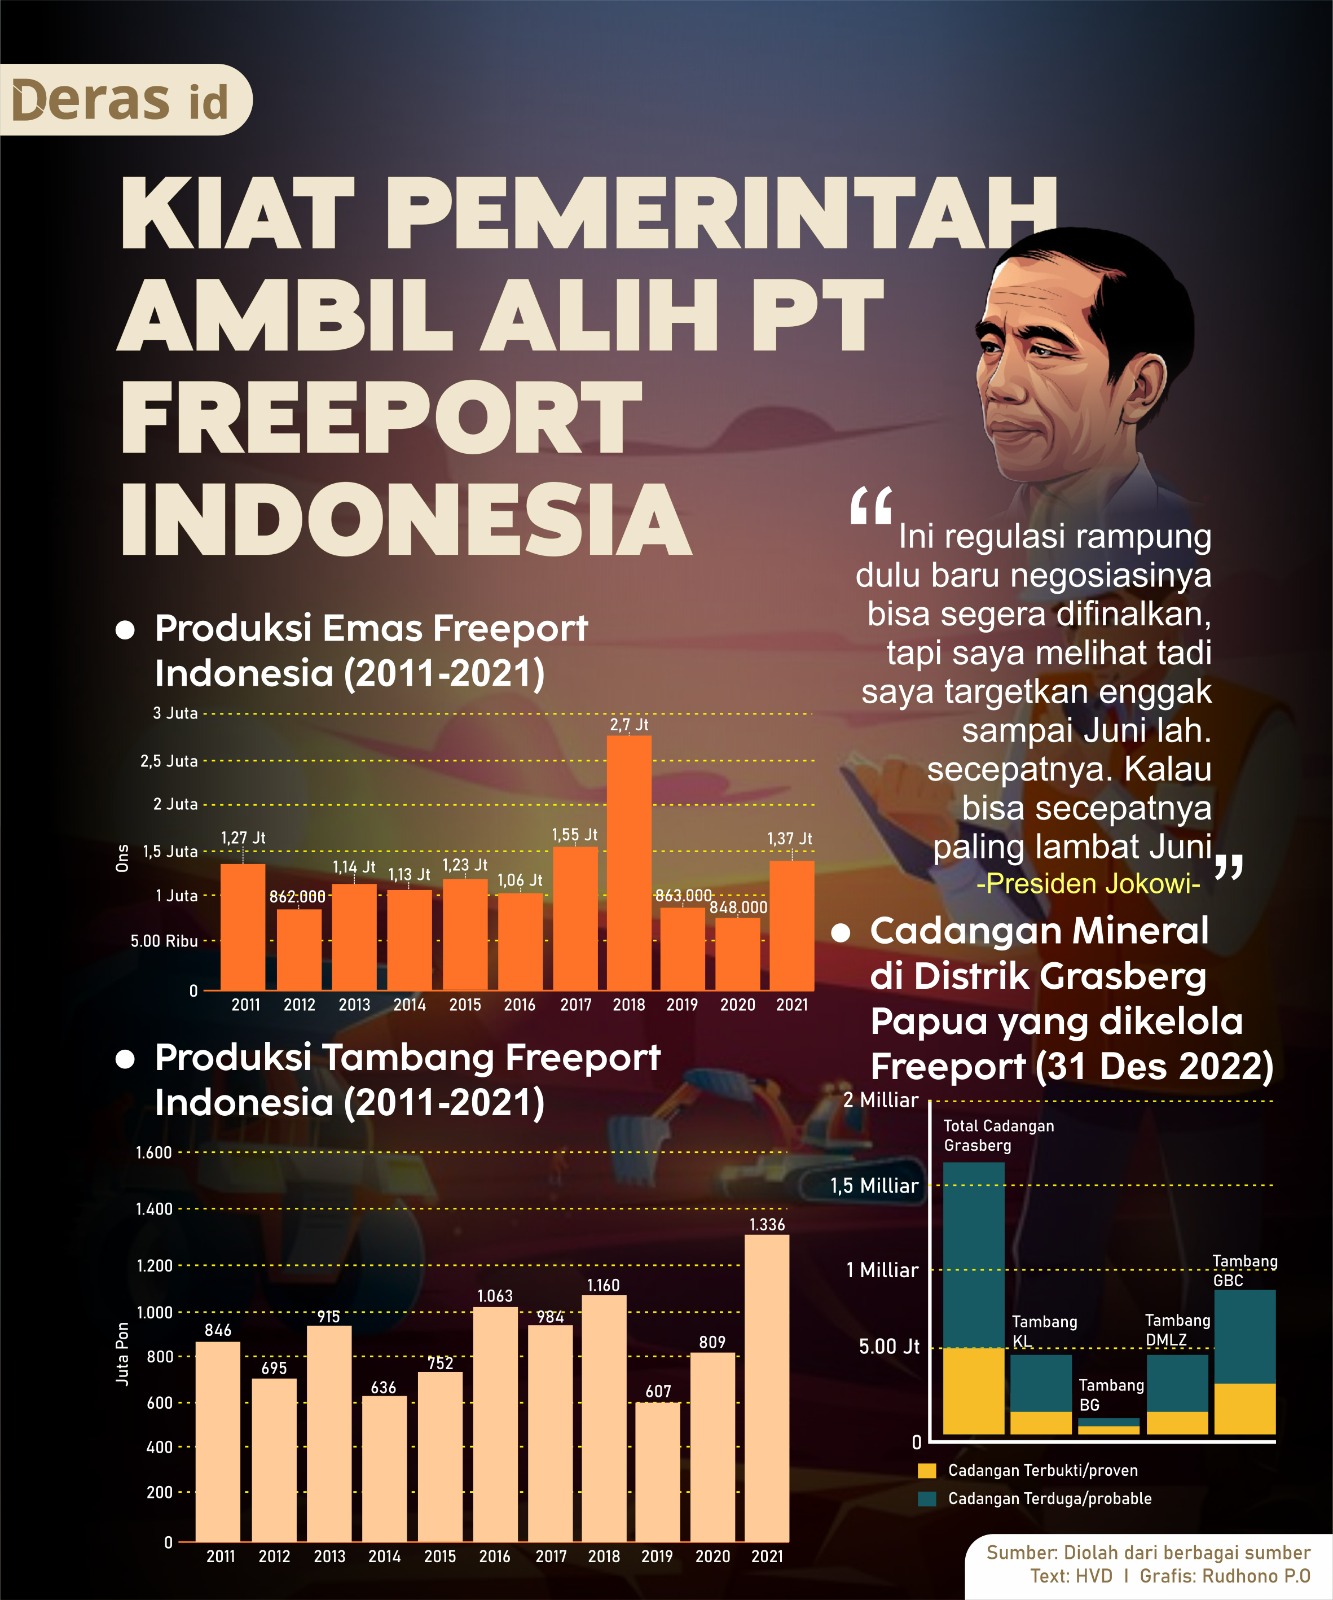 Kiat Pemerintah Ambil Alih PT Freeport Indonesia